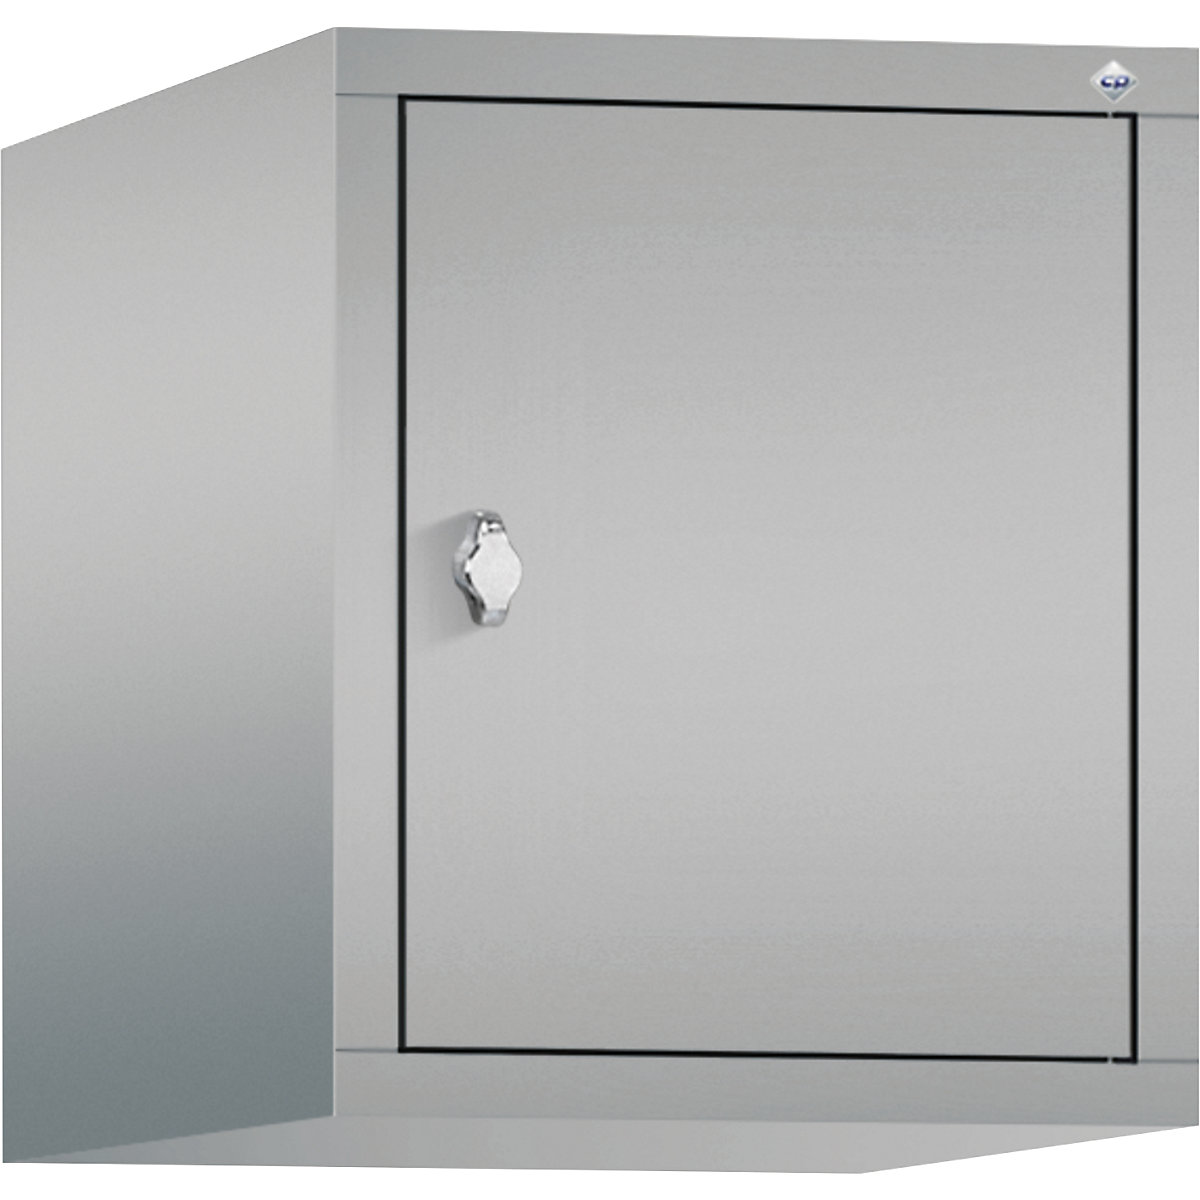 C+P – Altillo CLASSIC, 1 compartimento, anchura de compartimento 400 mm, aluminio blanco